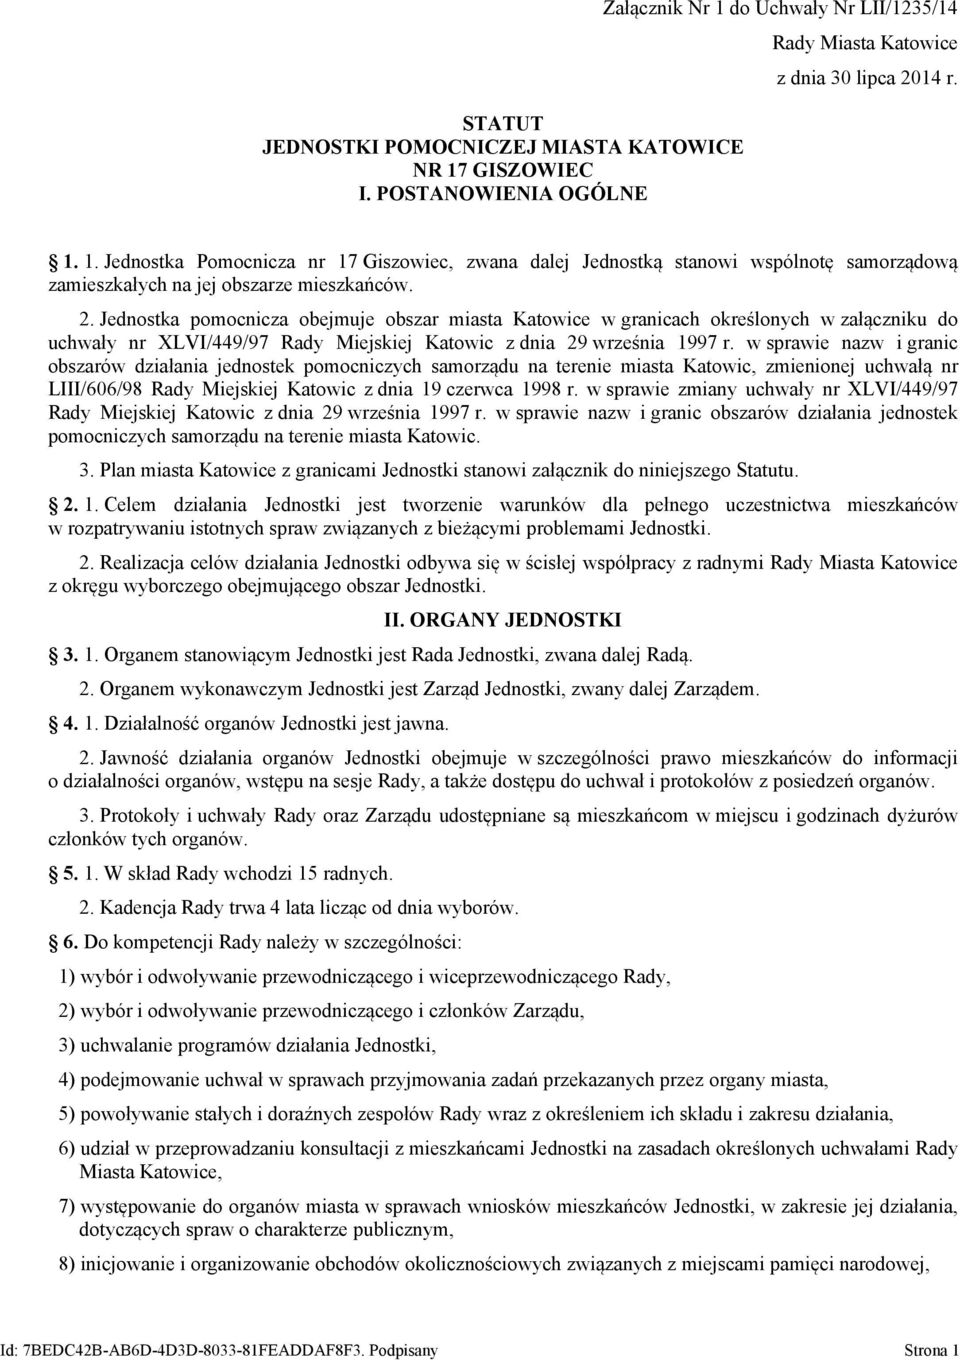 w sprawie nazw i granic obszarów działania jednostek pomocniczych samorządu na terenie miasta Katowic, zmienionej uchwałą nr LIII/606/98 Rady Miejskiej Katowic z dnia 19 czerwca 1998 r.